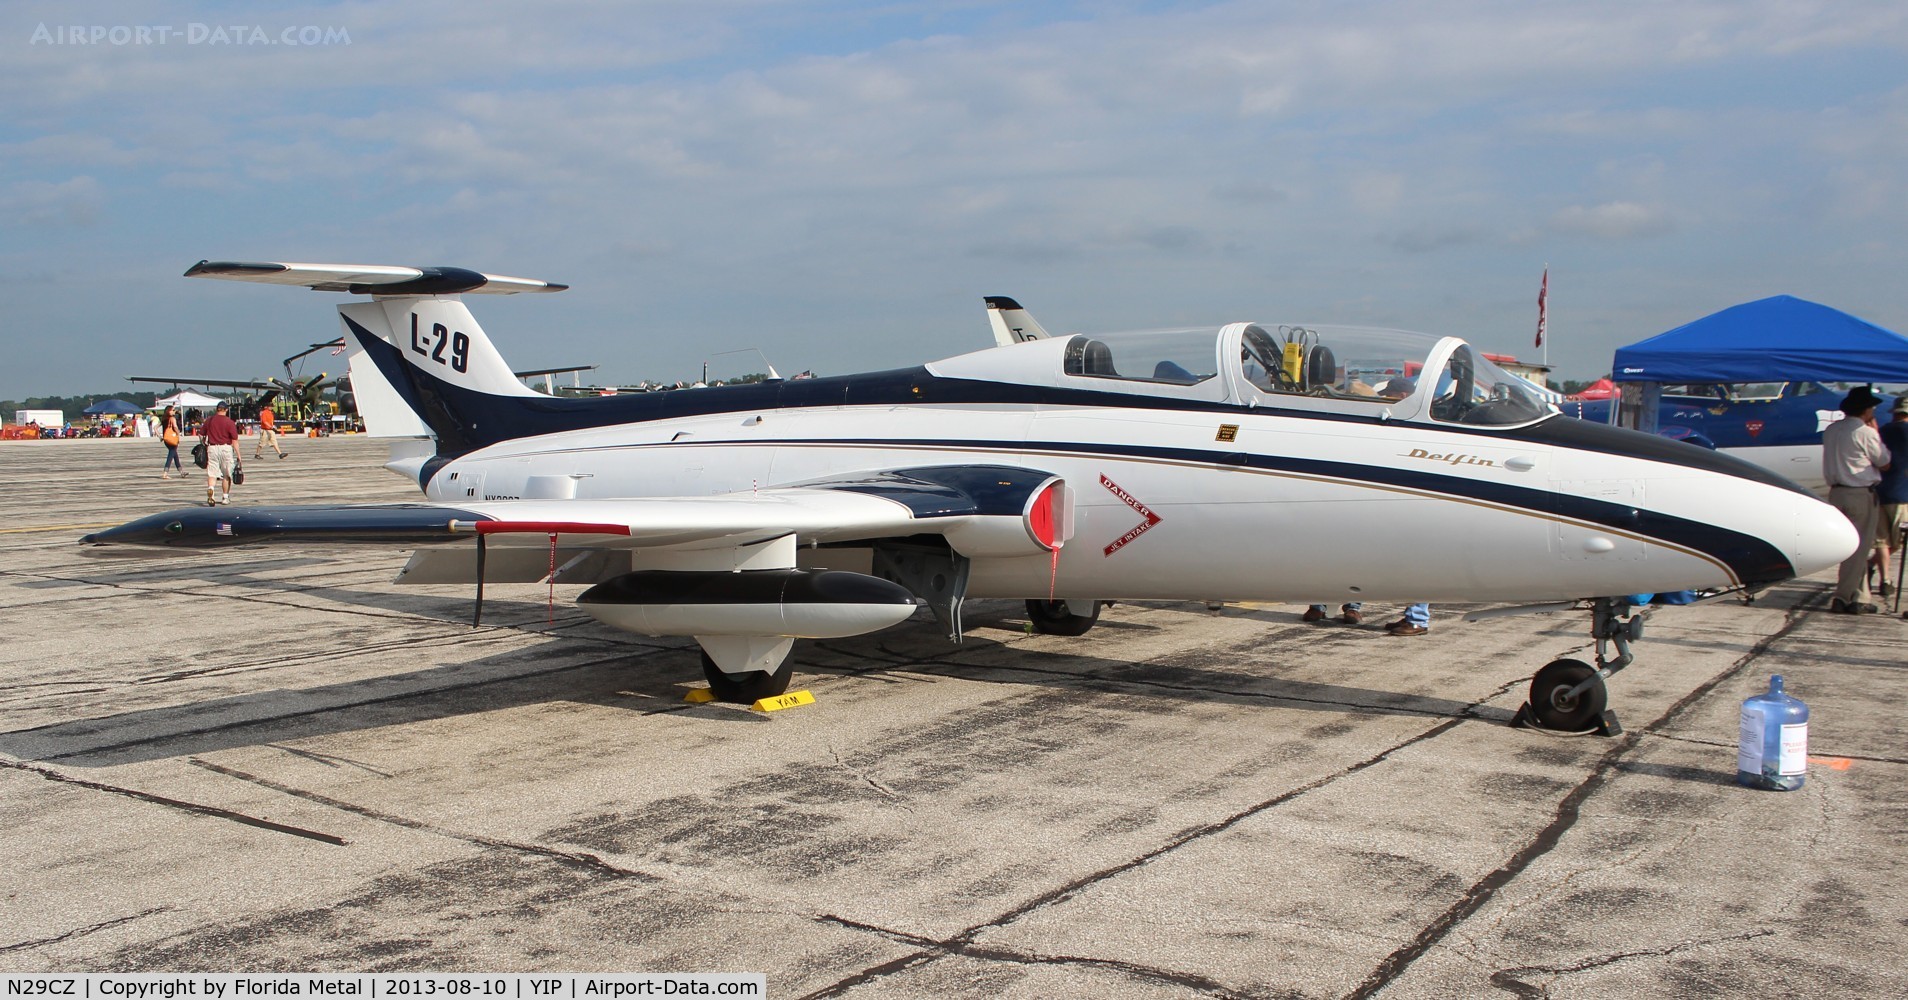 N29CZ, 1969 Aero L-29 Delfin C/N 993502, L-29 Delfin